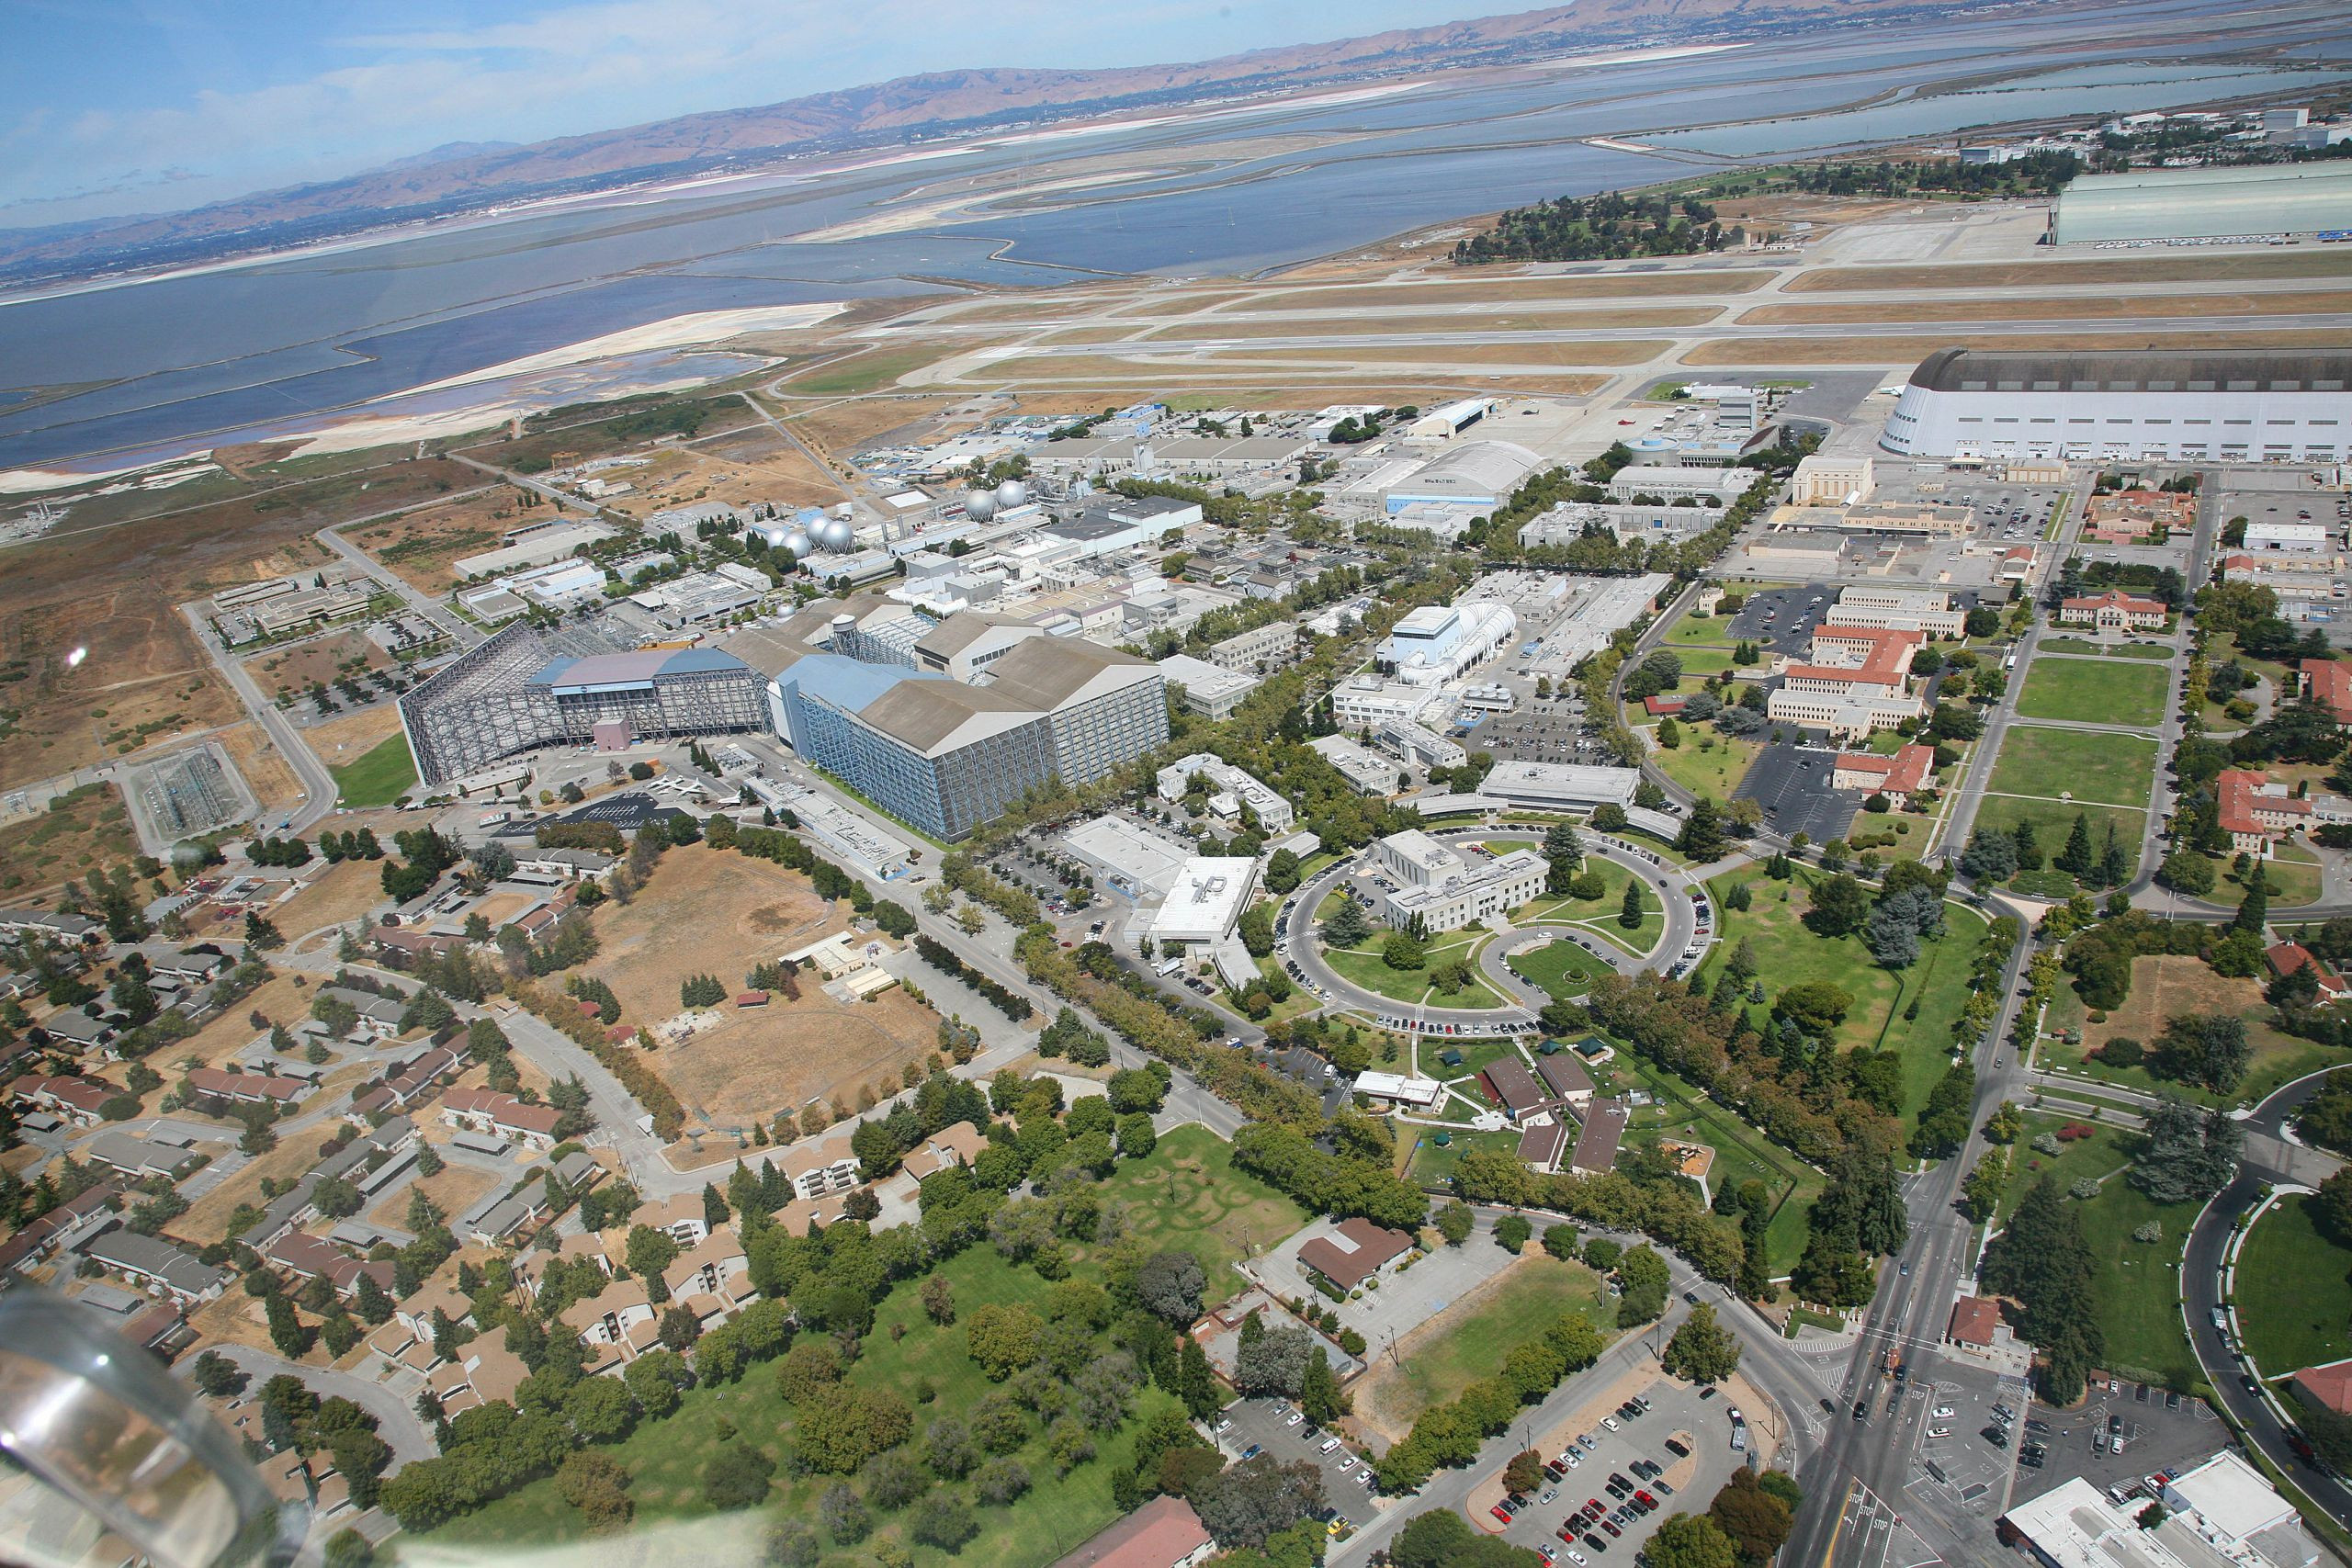 El centro Ames de la NASA, situado en las proximidades de la bahía de San Francisco. Foto: Wikipedia